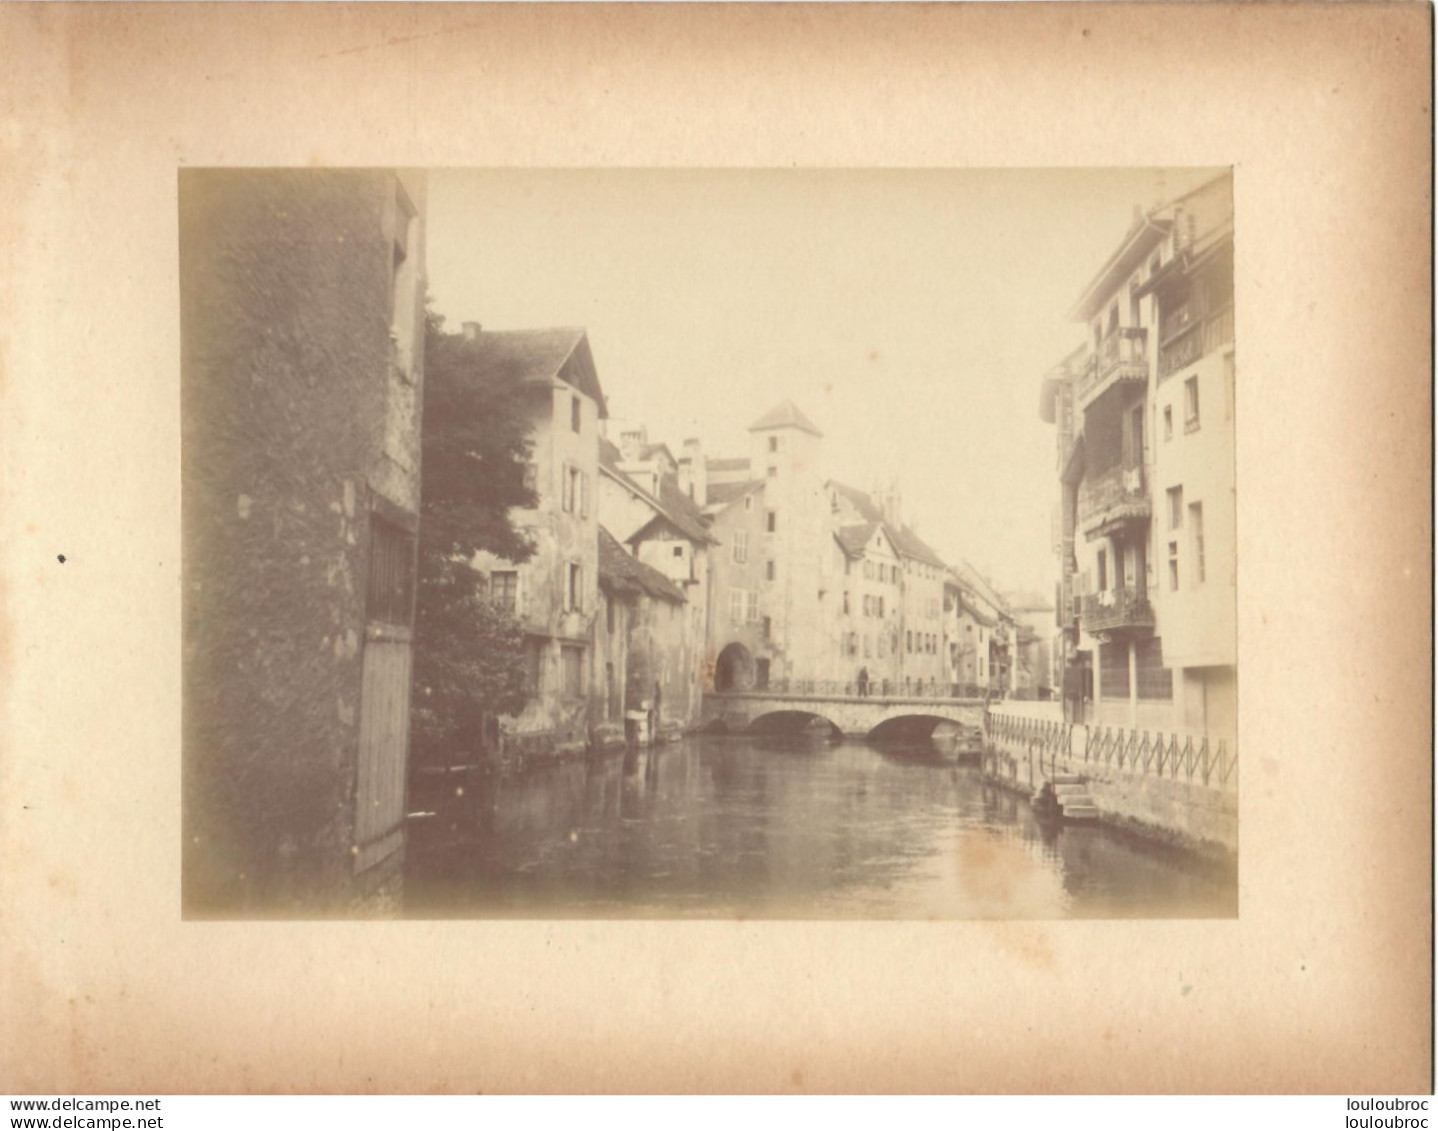 ANNECY CANAL DE THIOUX FIN 19em PHOTO ORIGINALE SUR CARTON 23x18CM FORMAT PHOTO 16X12CM - Alte (vor 1900)